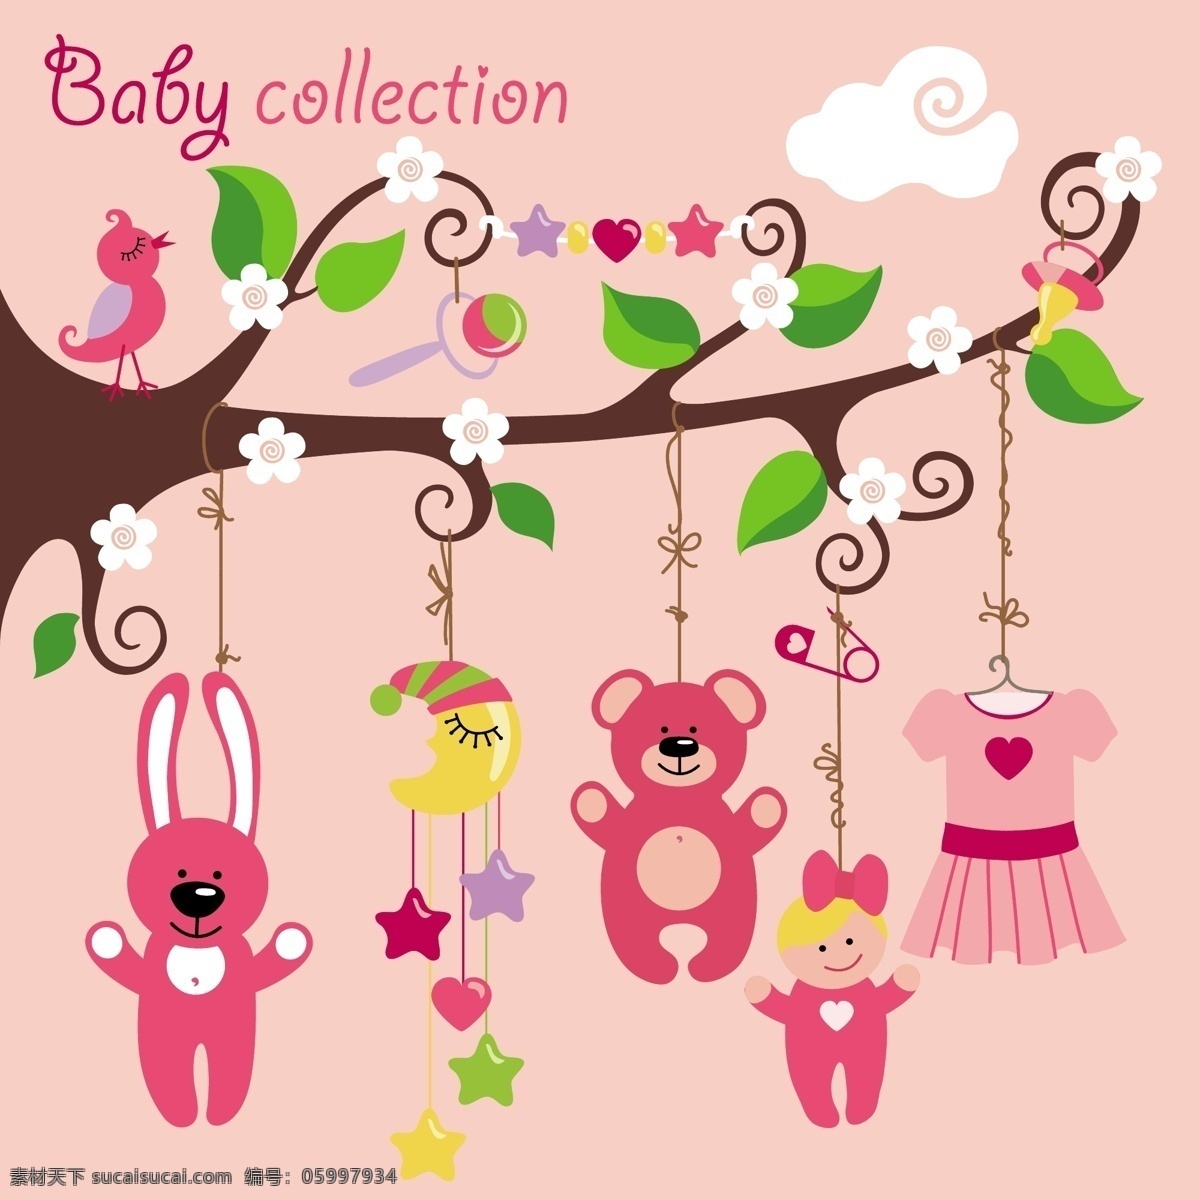 婴儿玩具 可爱 小清新 花草 鸟 树 儿童玩具 宝宝衣服 娃娃 宝宝元素 月亮 小熊 卡通设计